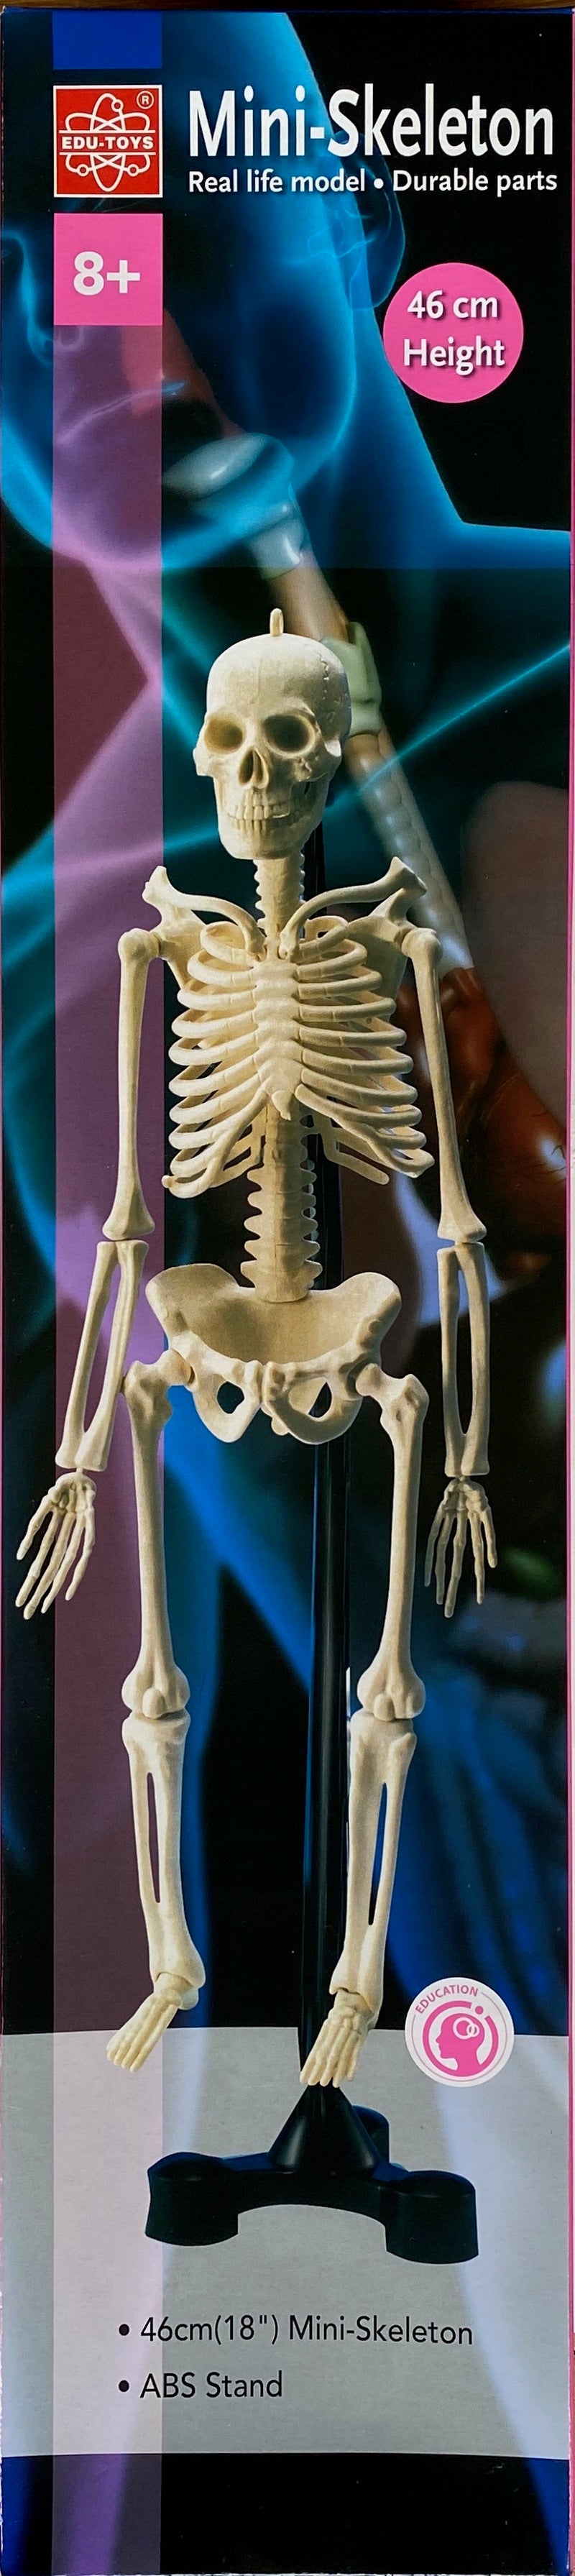 Edu-Toys - Mini Skeleton